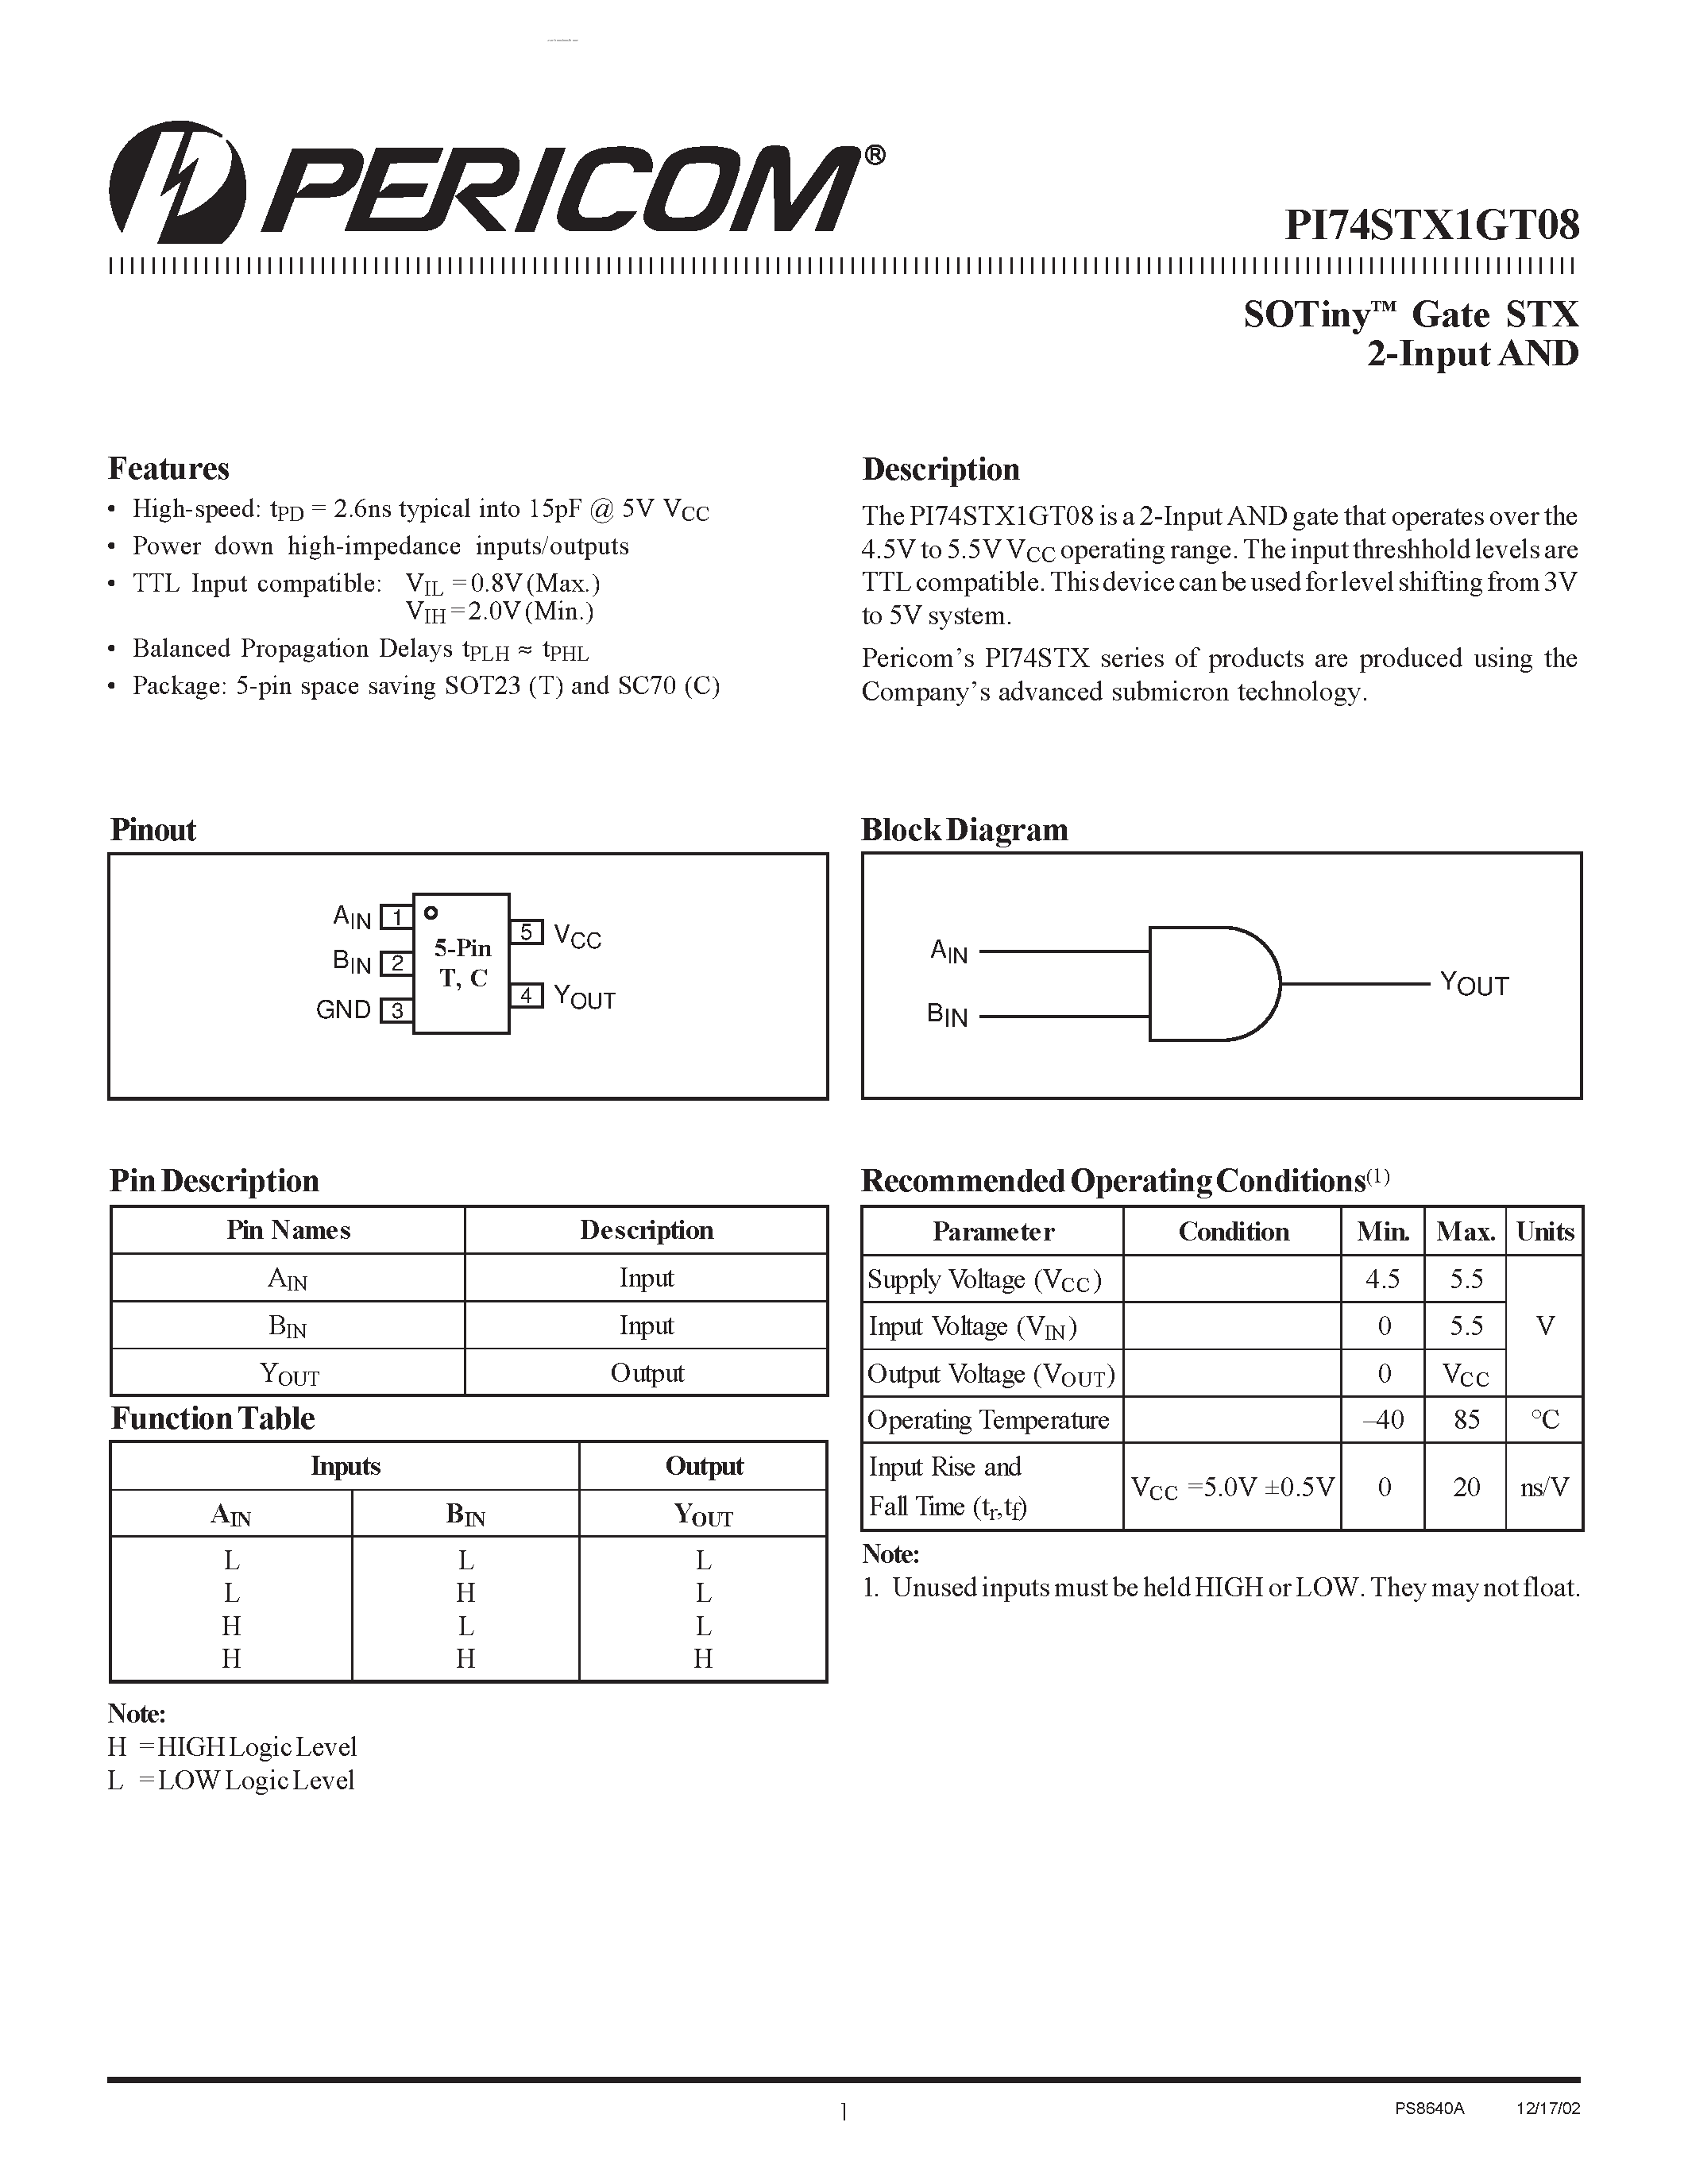 Datasheet PI74STX1GT08 - SOTiny Gate STX 2-Input AND page 1